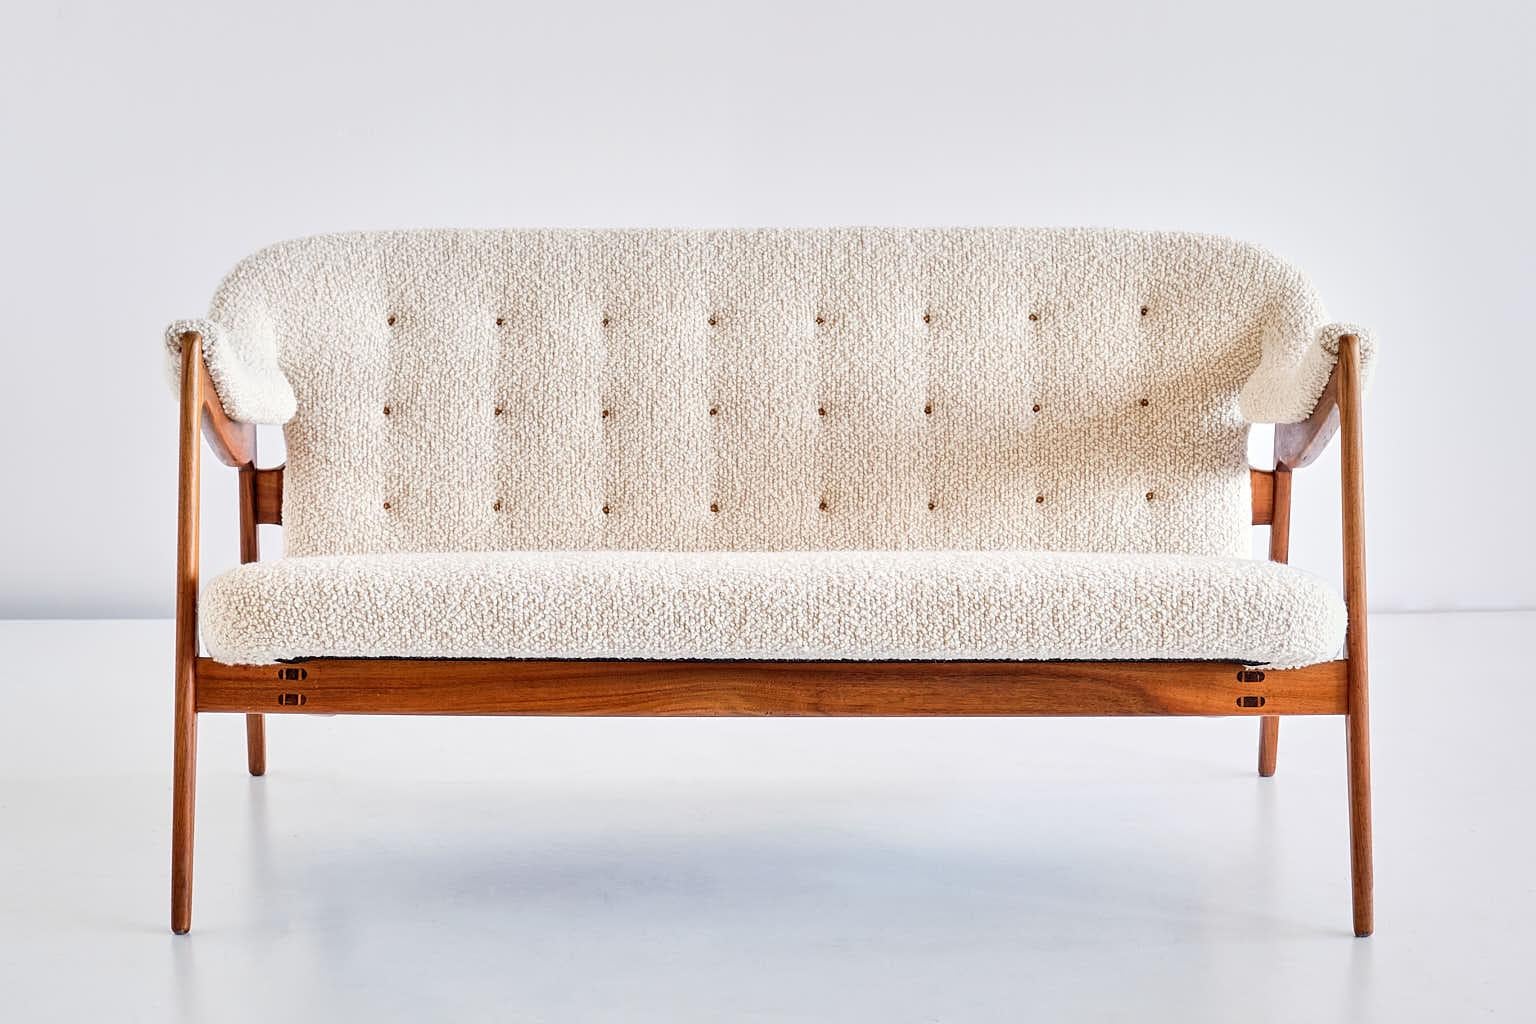 Dieses außergewöhnlich seltene Zweisitzer-Sofa wurde von Brockmann Petersen entworfen und 1951 von der Tischlerei Louis G. Thiersen & Søn hergestellt. Dieser Entwurf wurde 1951 auf der Tischlerausstellung in Kopenhagen vorgestellt. Bei dem hier